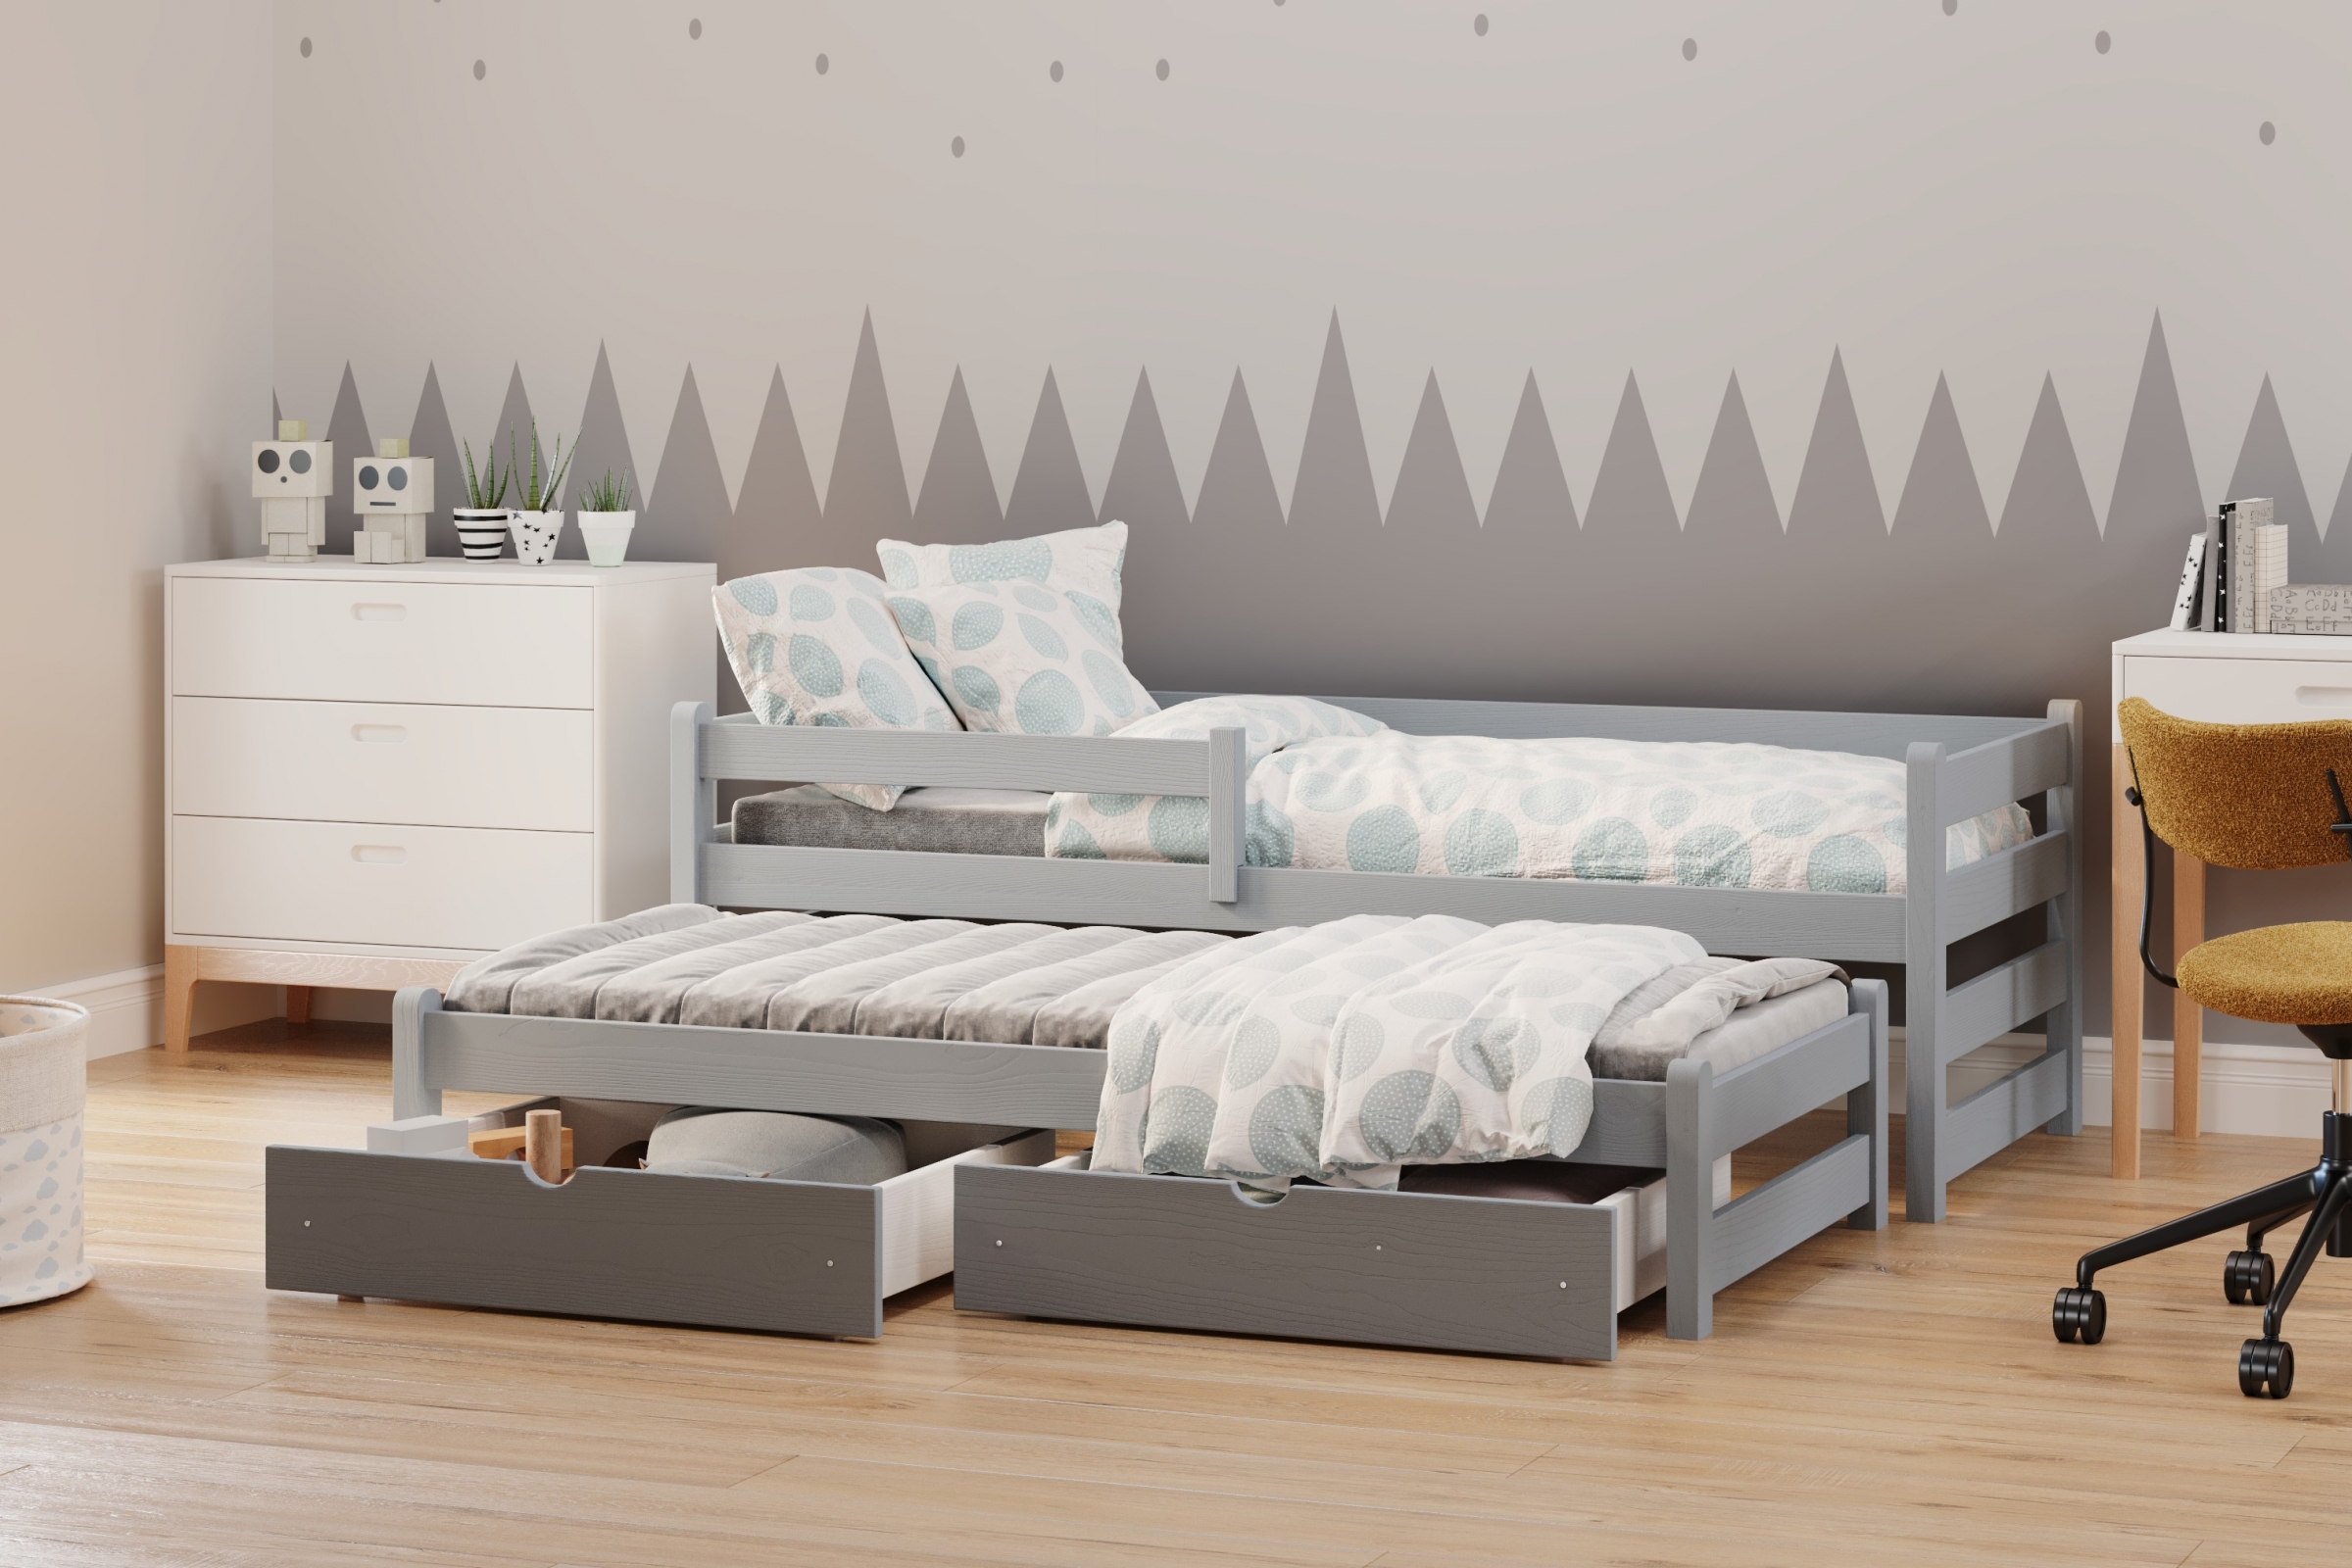 Detská posteľ prízemná s výsuvným lôžkom Alis DPV 001 - šedý, 80x180 Posteľ prízemná s výsuvným lôžkom Alis - Farba šedý - vizualizácia